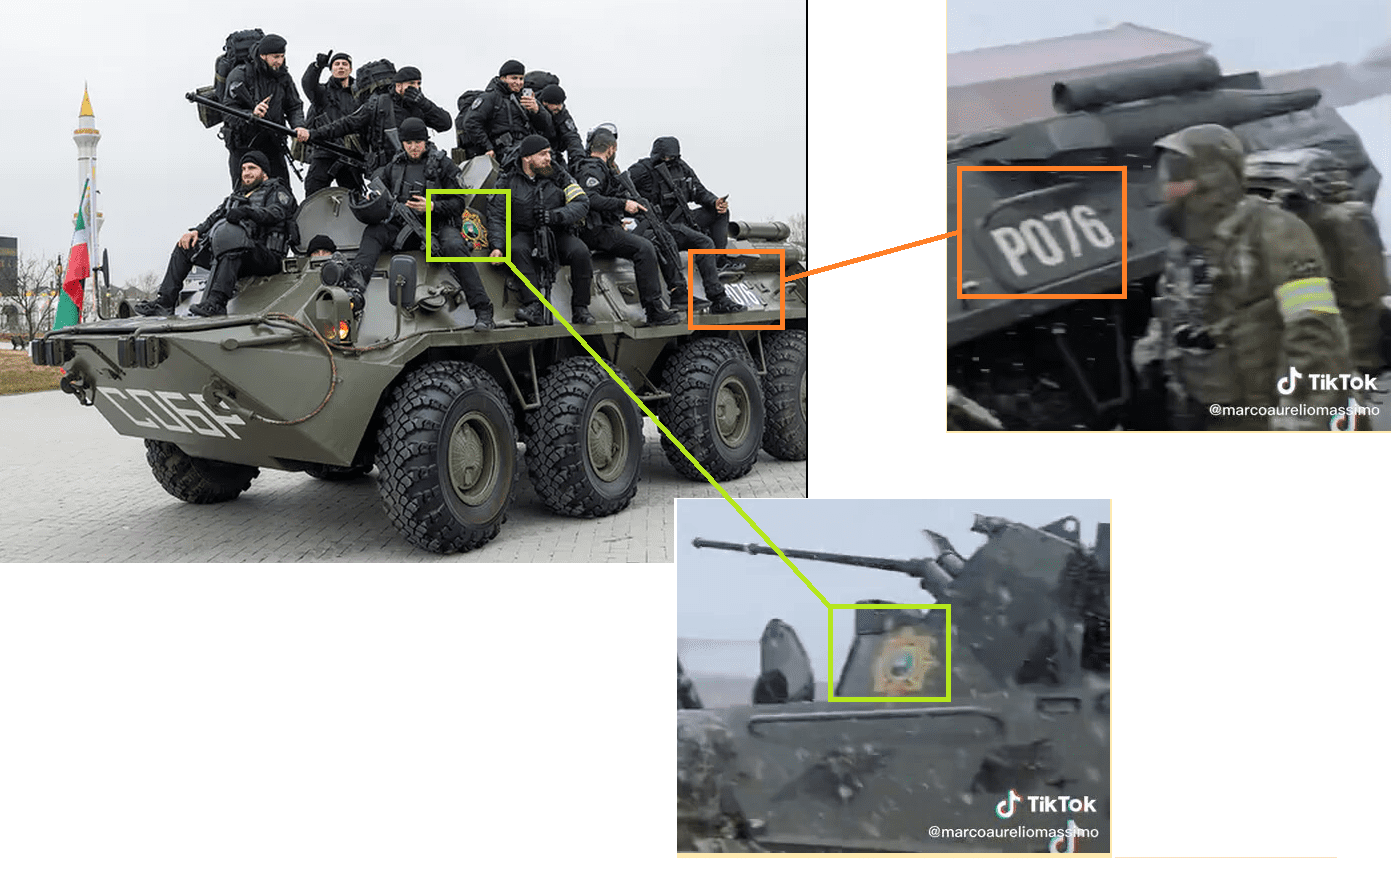 Porównanie trzech obrazów z transporterem wojskowym. Ustalenie tego, że pojazd należy do Czeczenów umożliwia numer P076 oraz oznaka Ramzana Kadyrowa.